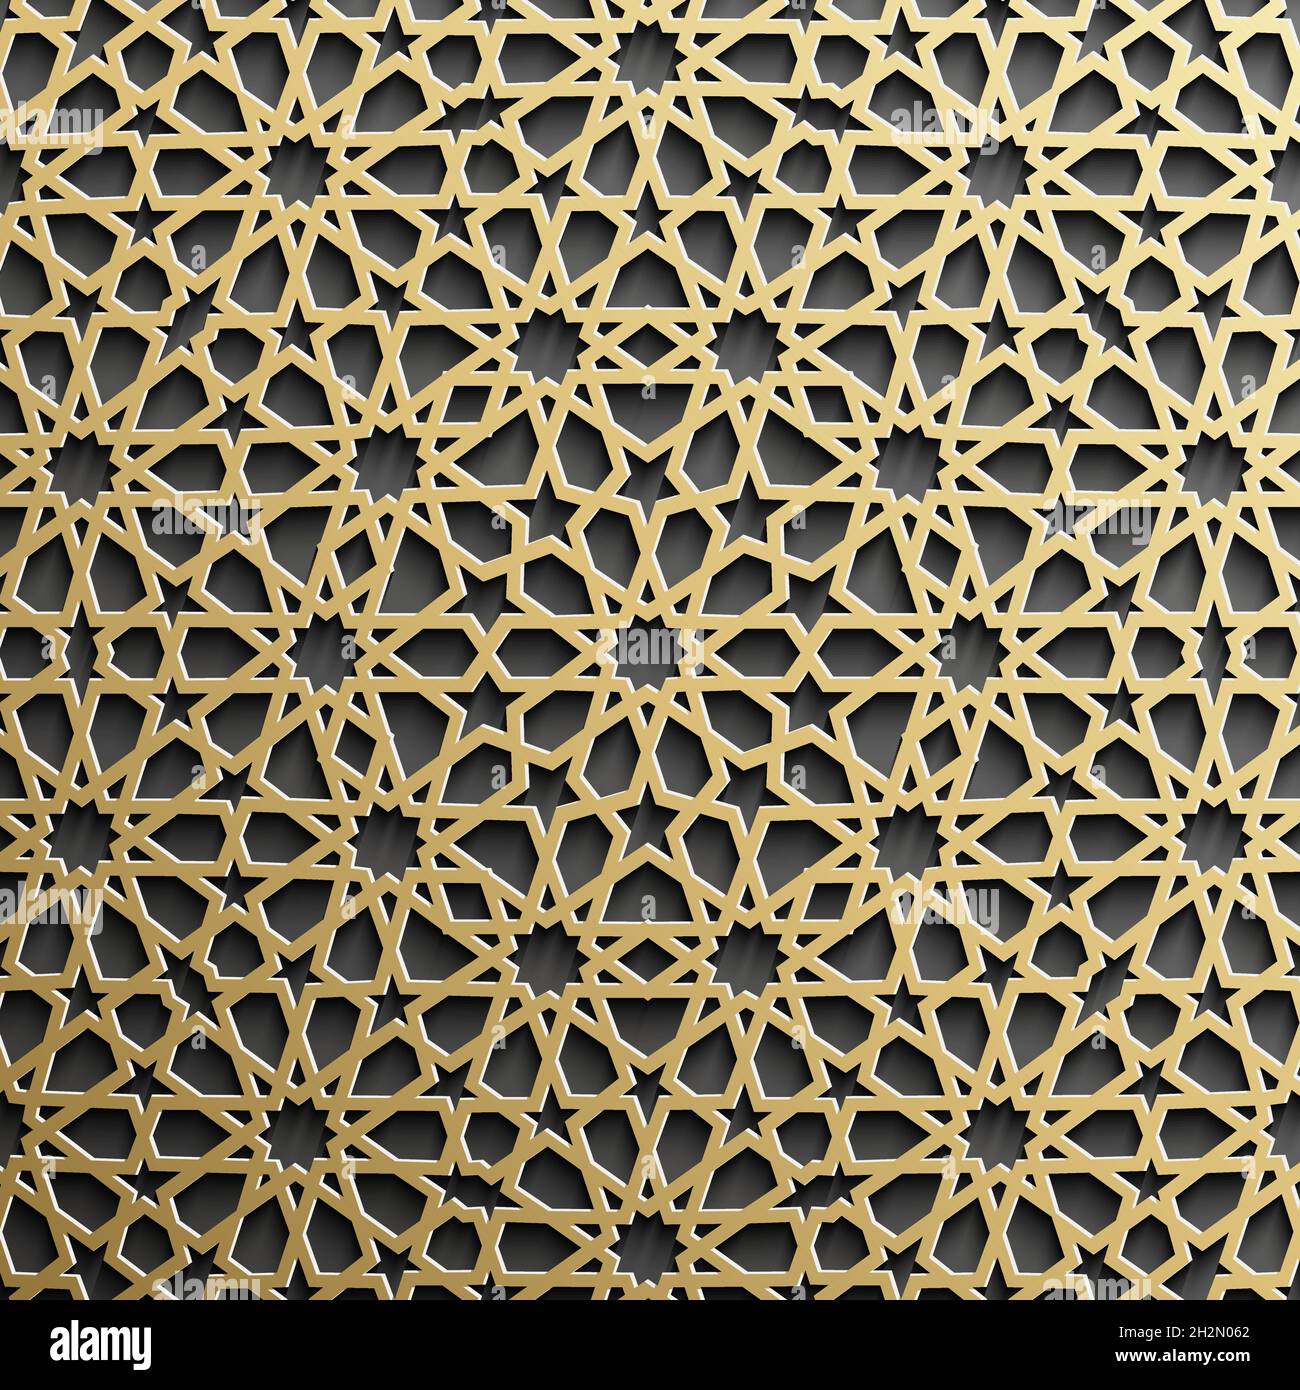 Islamic pattern: Gói gọn đầy đủ trong những họa tiết đẹp và phong phú, thử đến xem những hình ảnh về họa tiết Islamic này. Nếu bạn là một người yêu mến ngôn ngữ nghệ thuật và sáng tạo, đây chắc chắn là điều đáng để khám phá.